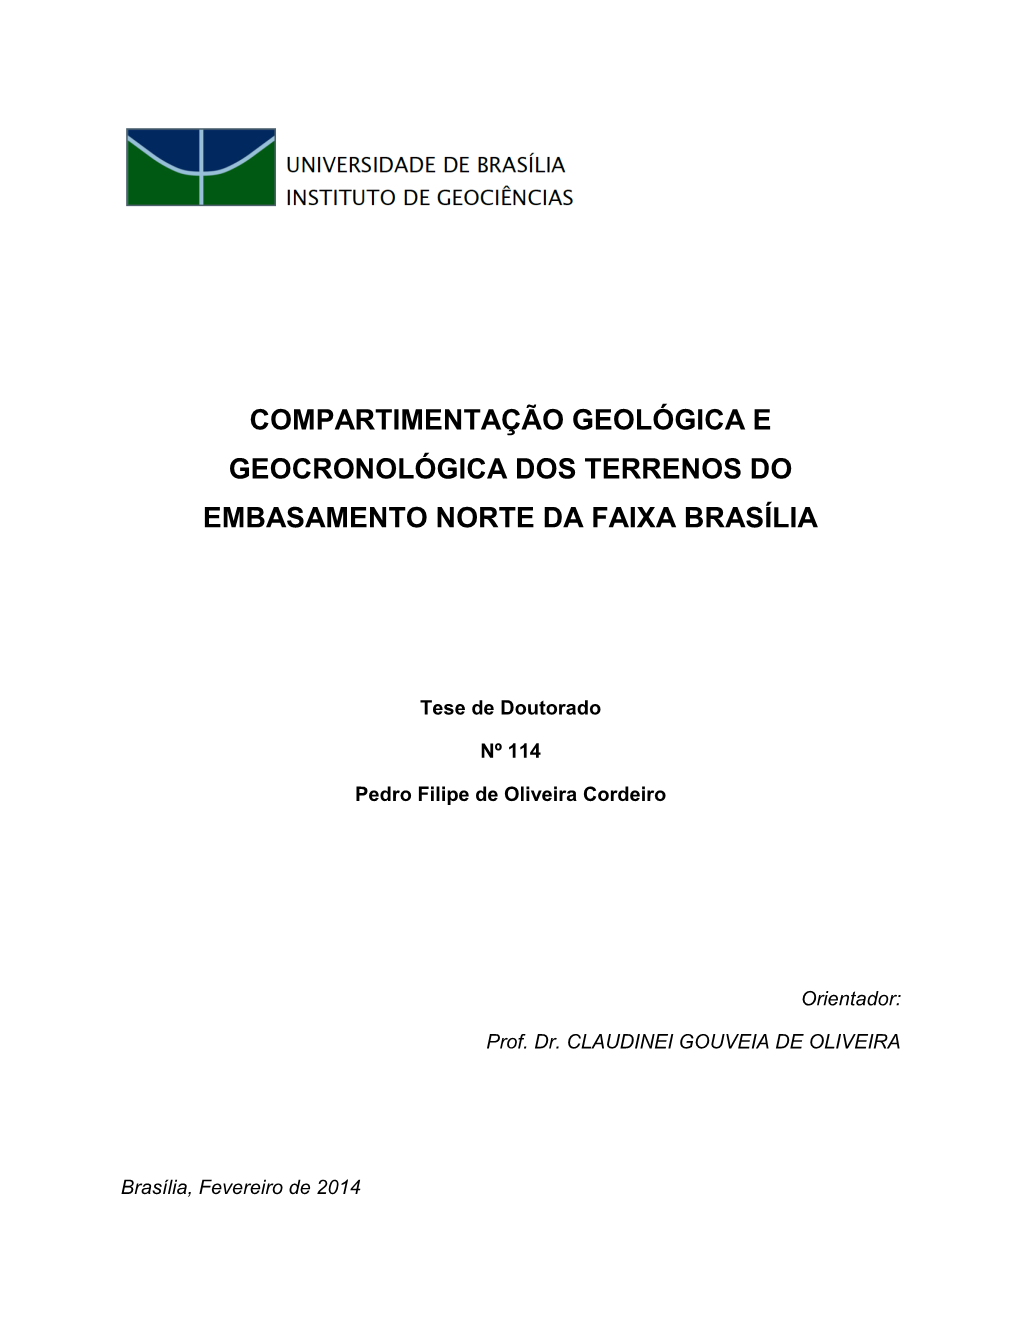 Compartimentação Geológica E Geocronológica Dos Terrenos Do Embasamento Norte Da Faixa Brasília